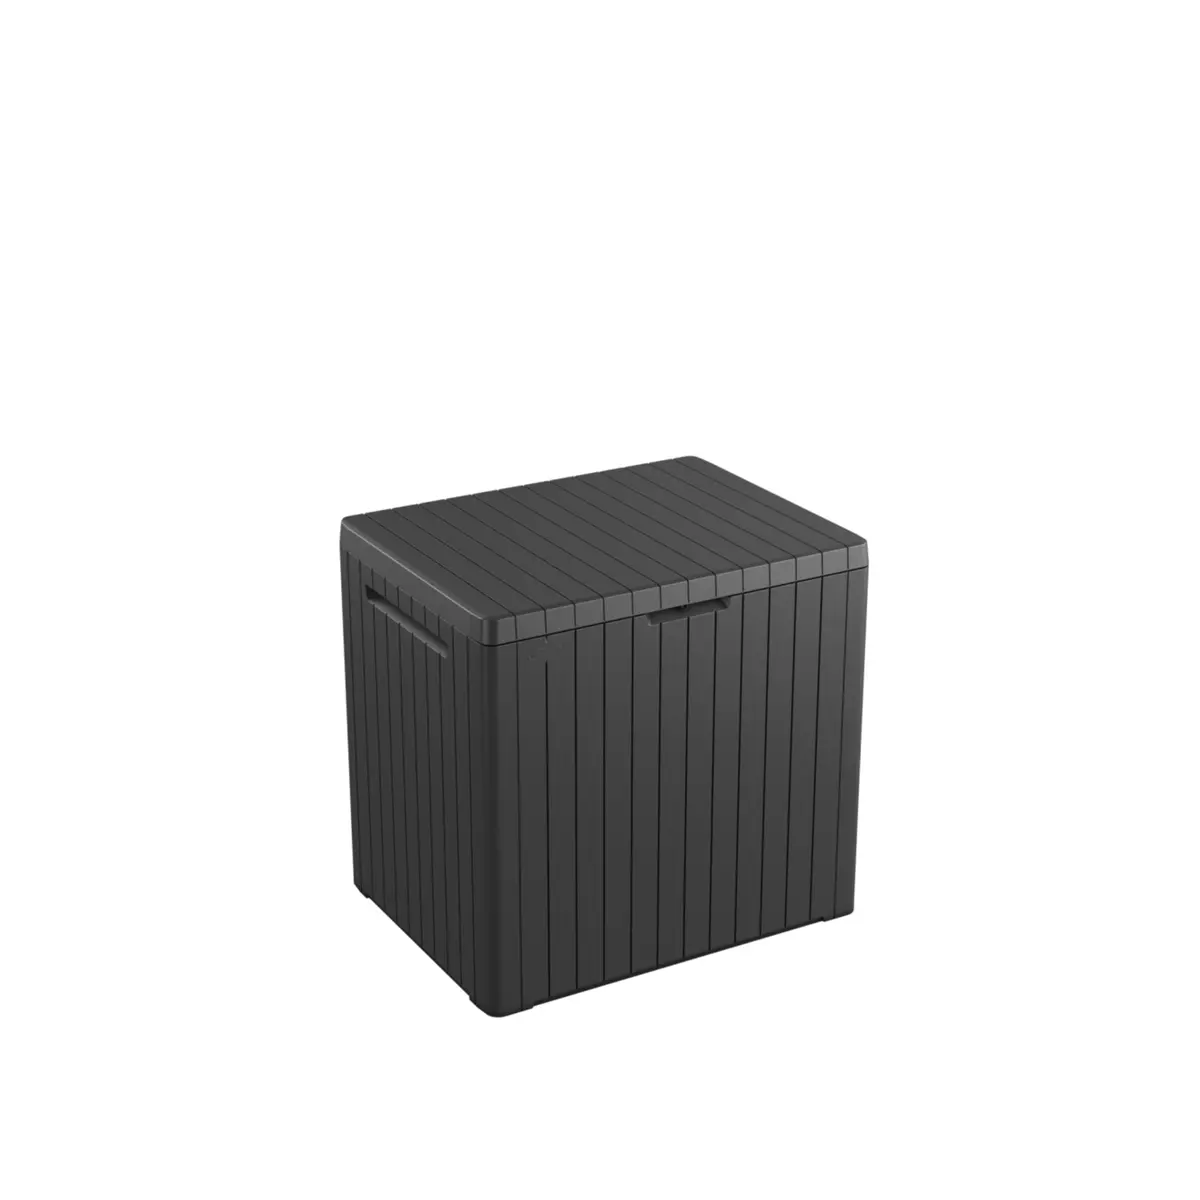 Keter Coffre de jardin résine City cube gris, 57,8 x 44 x H.54.8 cm